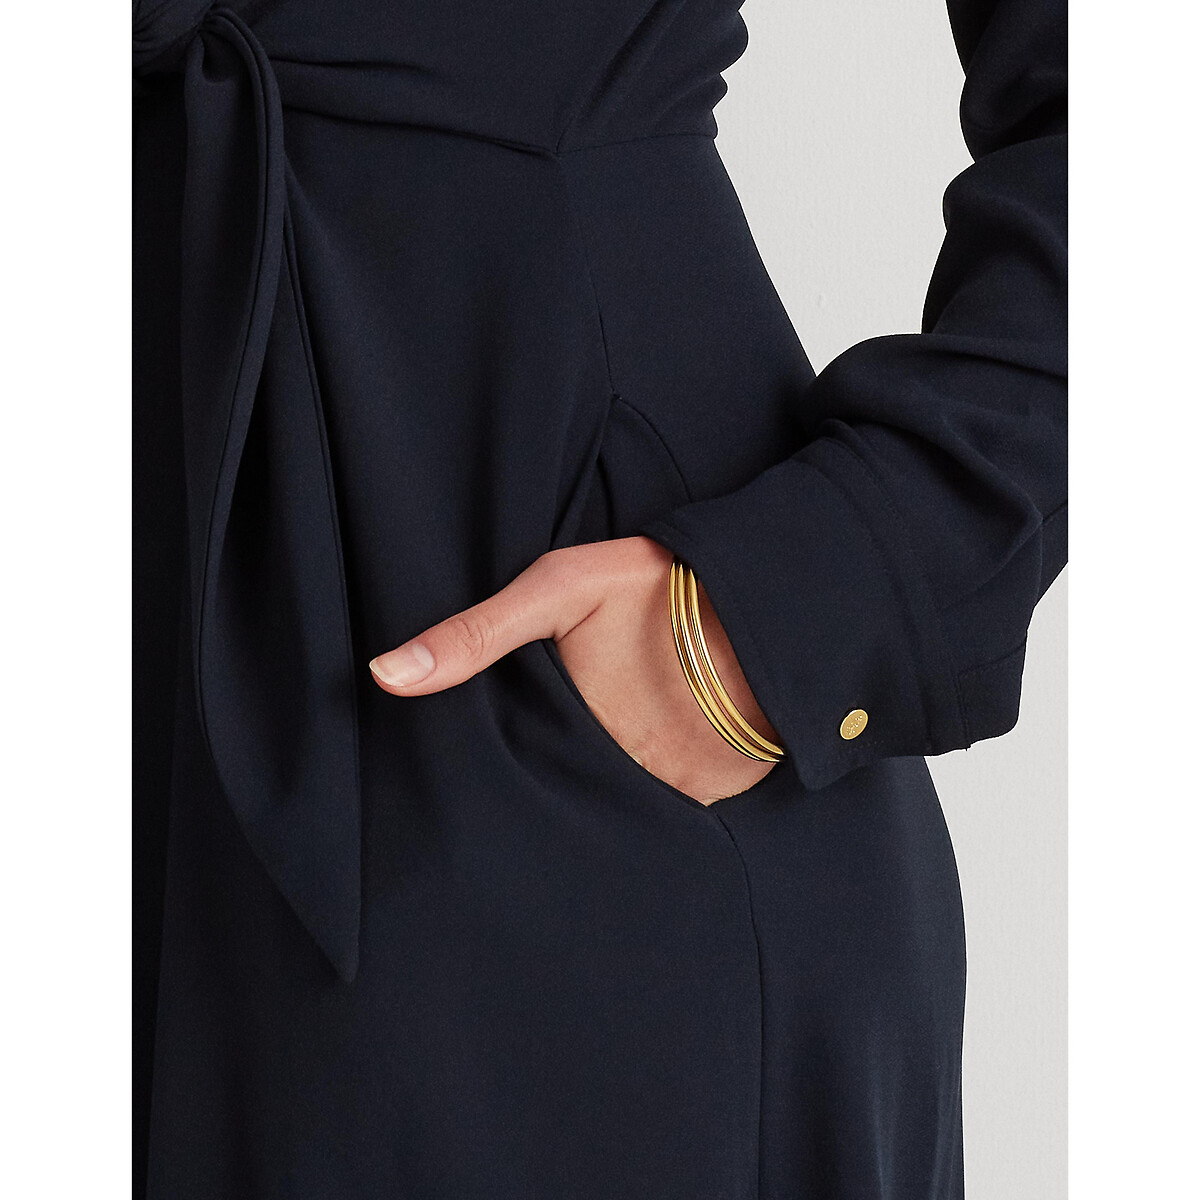 Платье-рубашка LaRedoute С ремешком и длинными рукавами 38 (FR) - 44 (RUS) синий, размер 38 (FR) - 44 (RUS) С ремешком и длинными рукавами 38 (FR) - 44 (RUS) синий - фото 3